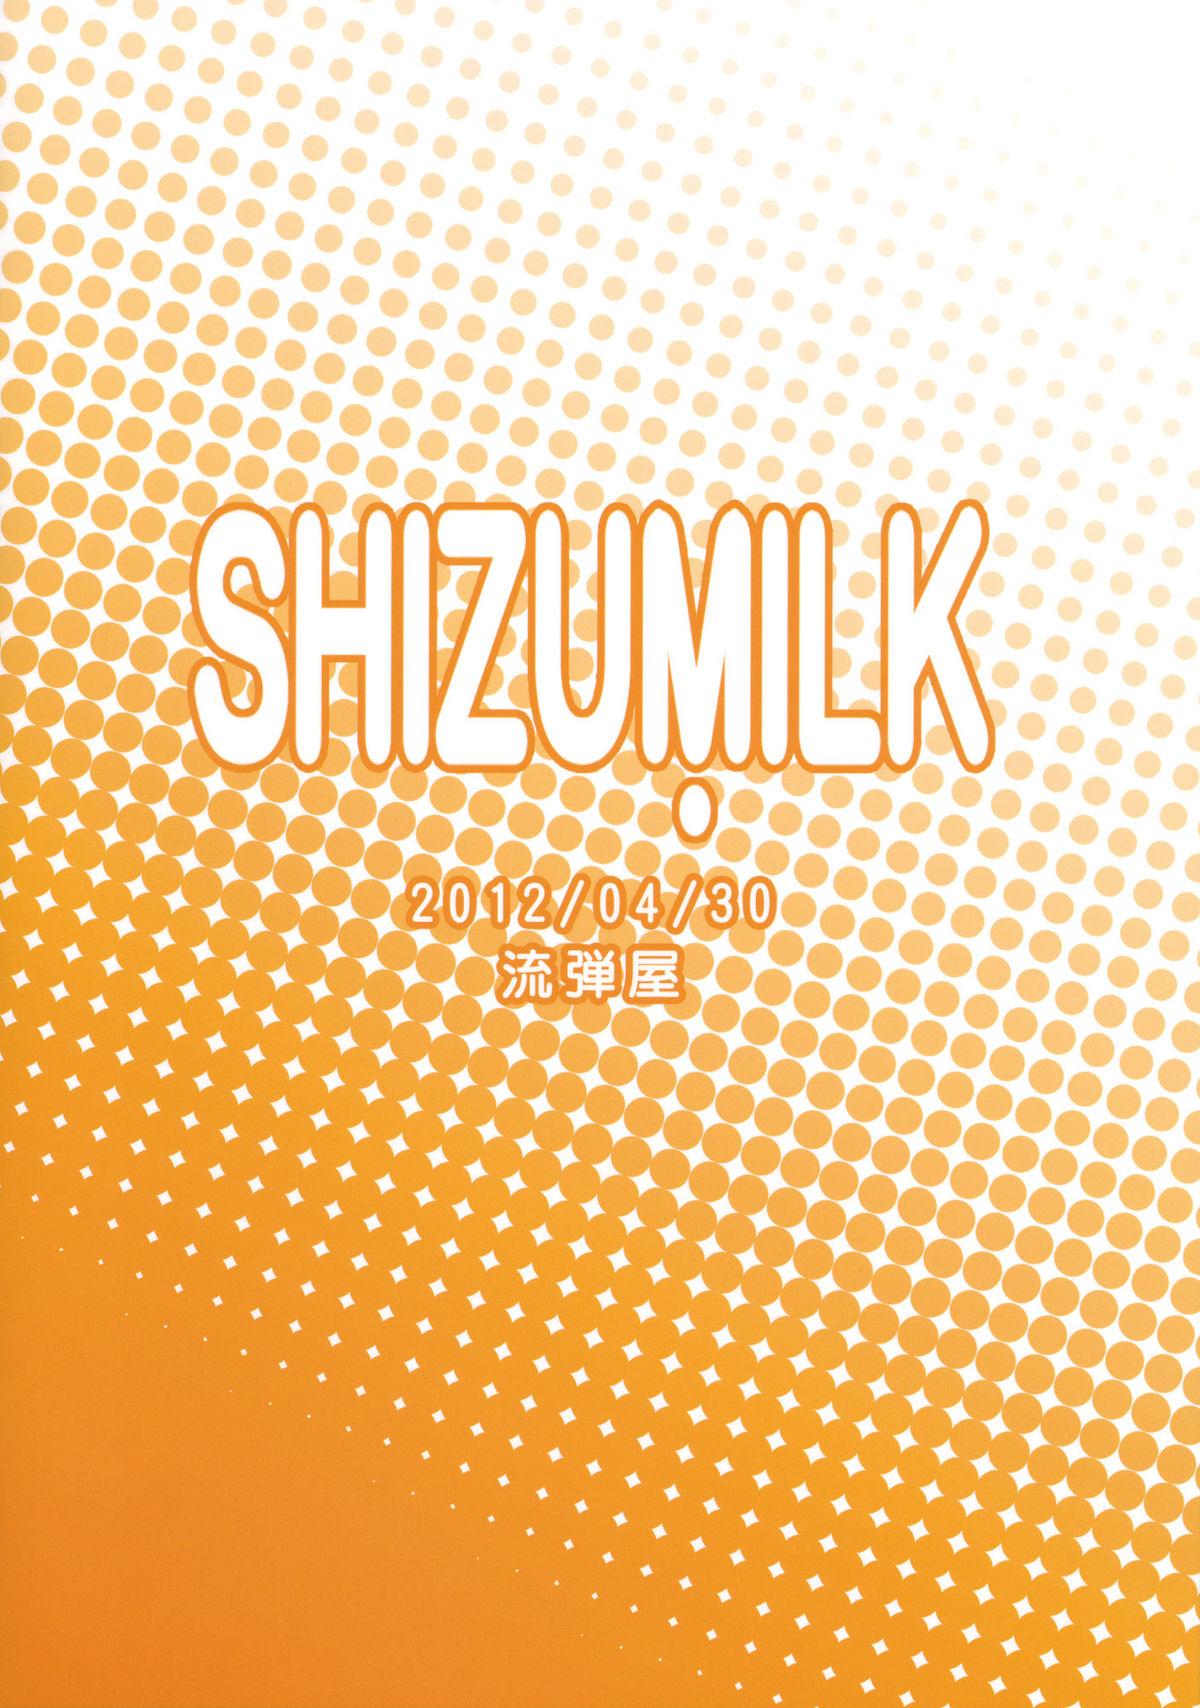 SHIZUMILK 16